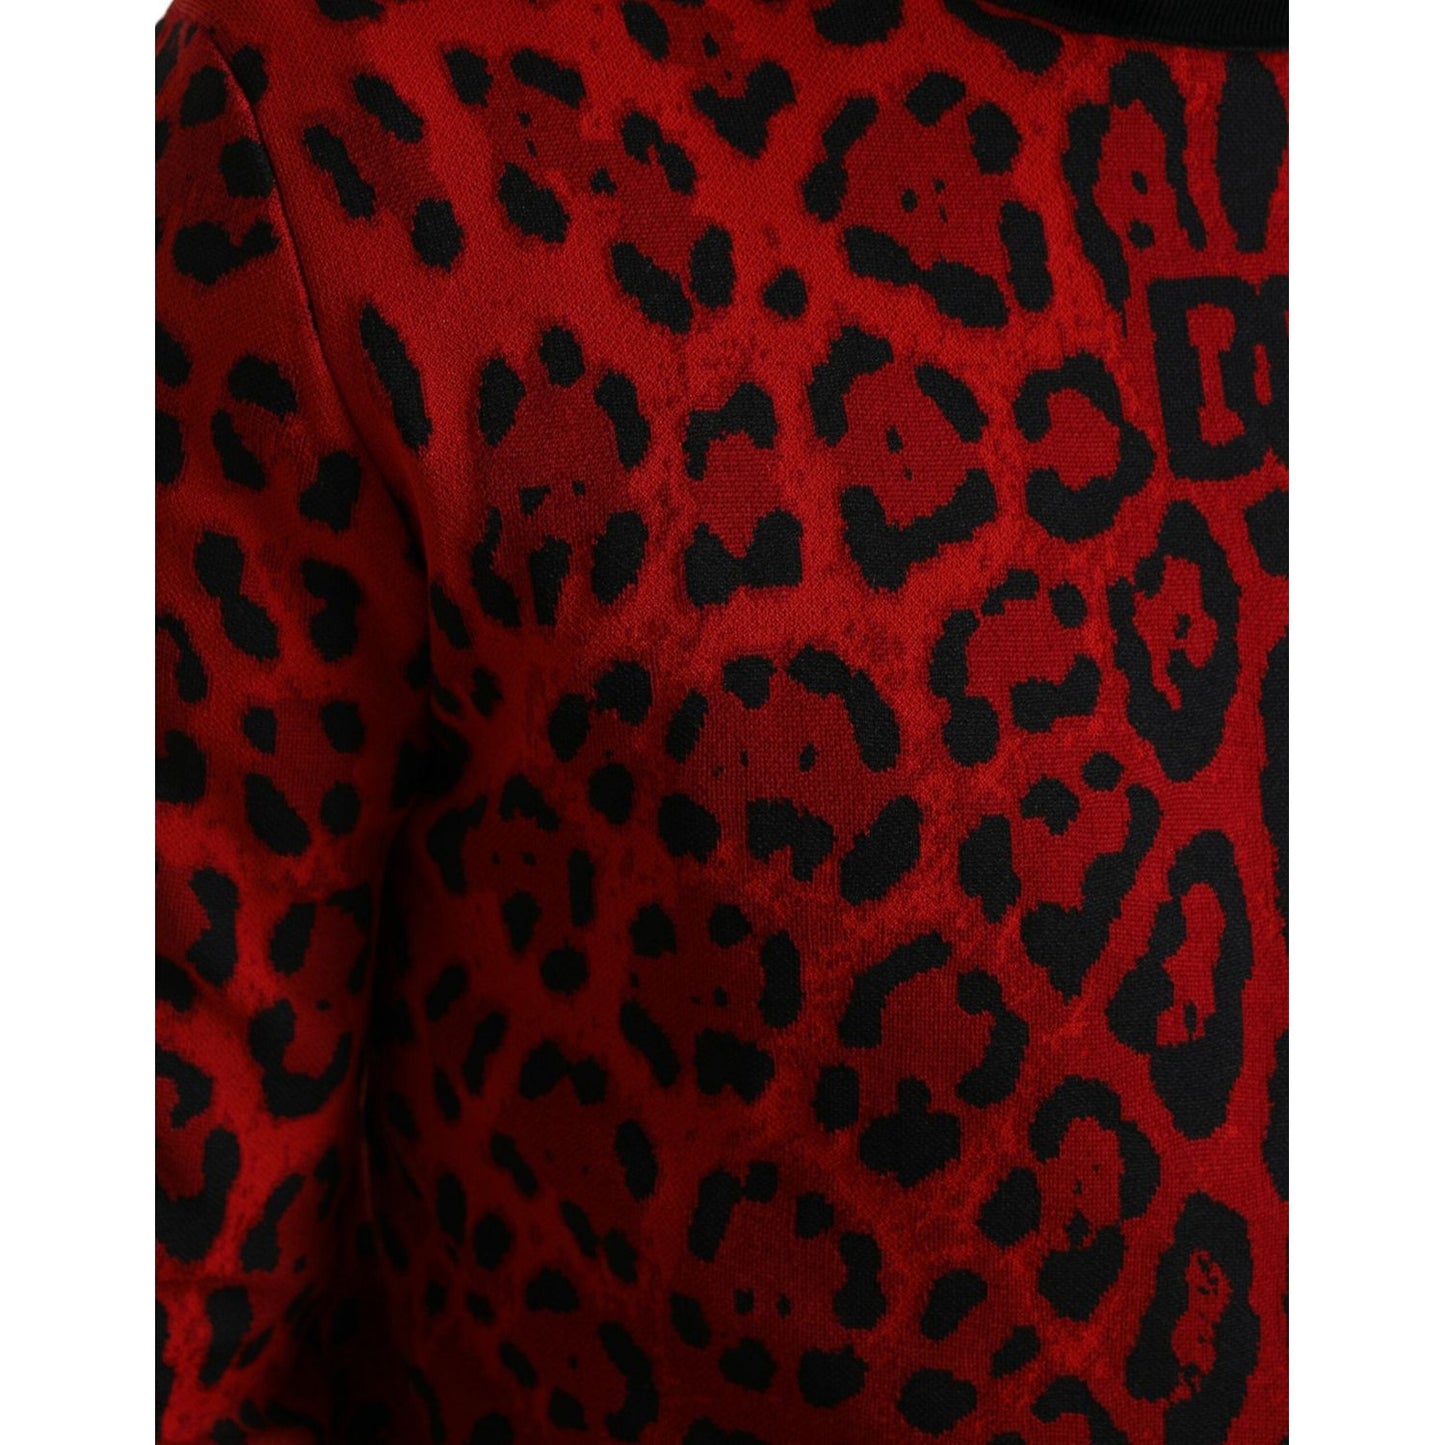 Dolce & Gabbana Elegant Leopard Turtleneck Sweater red-leopard-print-turtleneck-pullover-sweater